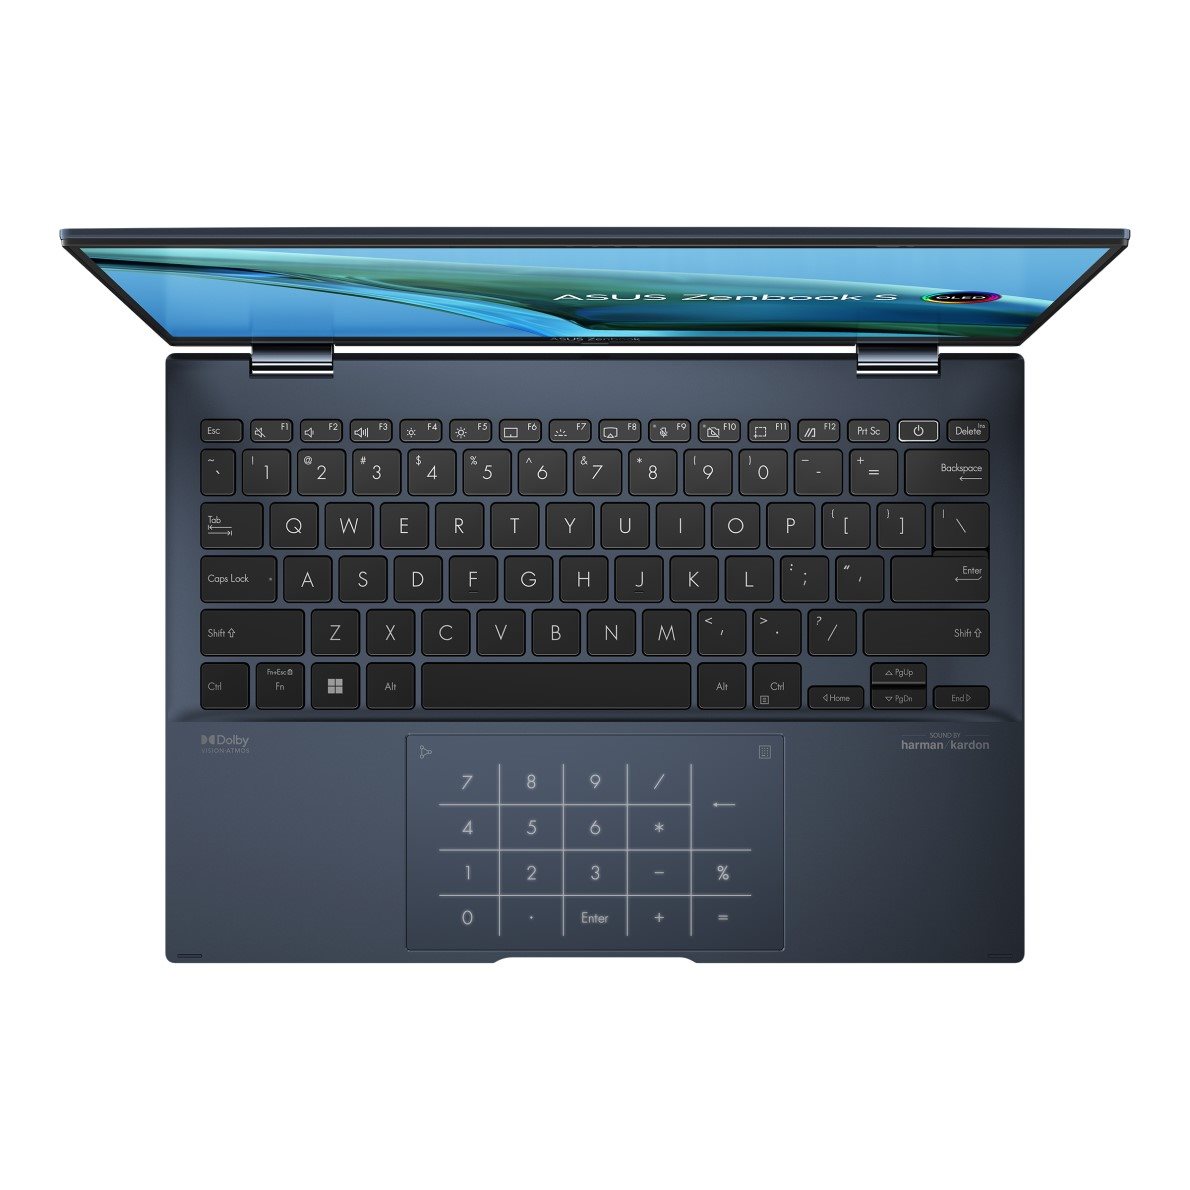 Laptop ASUS Zenbook S 13 Flip OLED UP5302ZA-OLED136W Ponder Blue celokovový